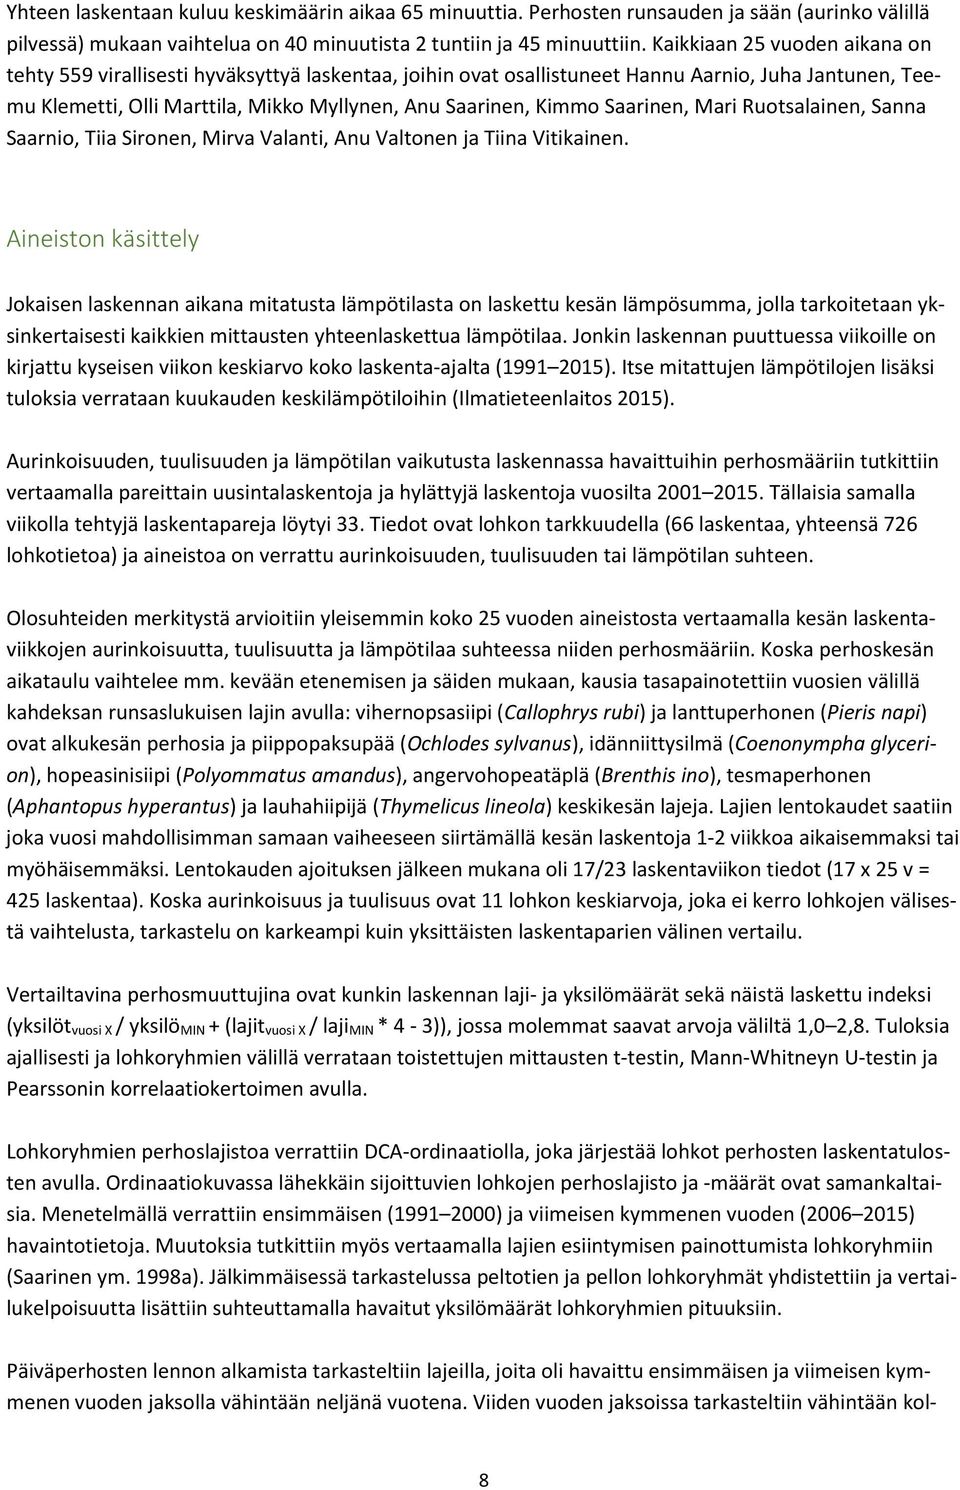 Saarinen, Mari Ruotsalainen, Sanna Saarnio, Tiia Sironen, Mirva Valanti, Anu Valtonen ja Tiina Vitikainen.